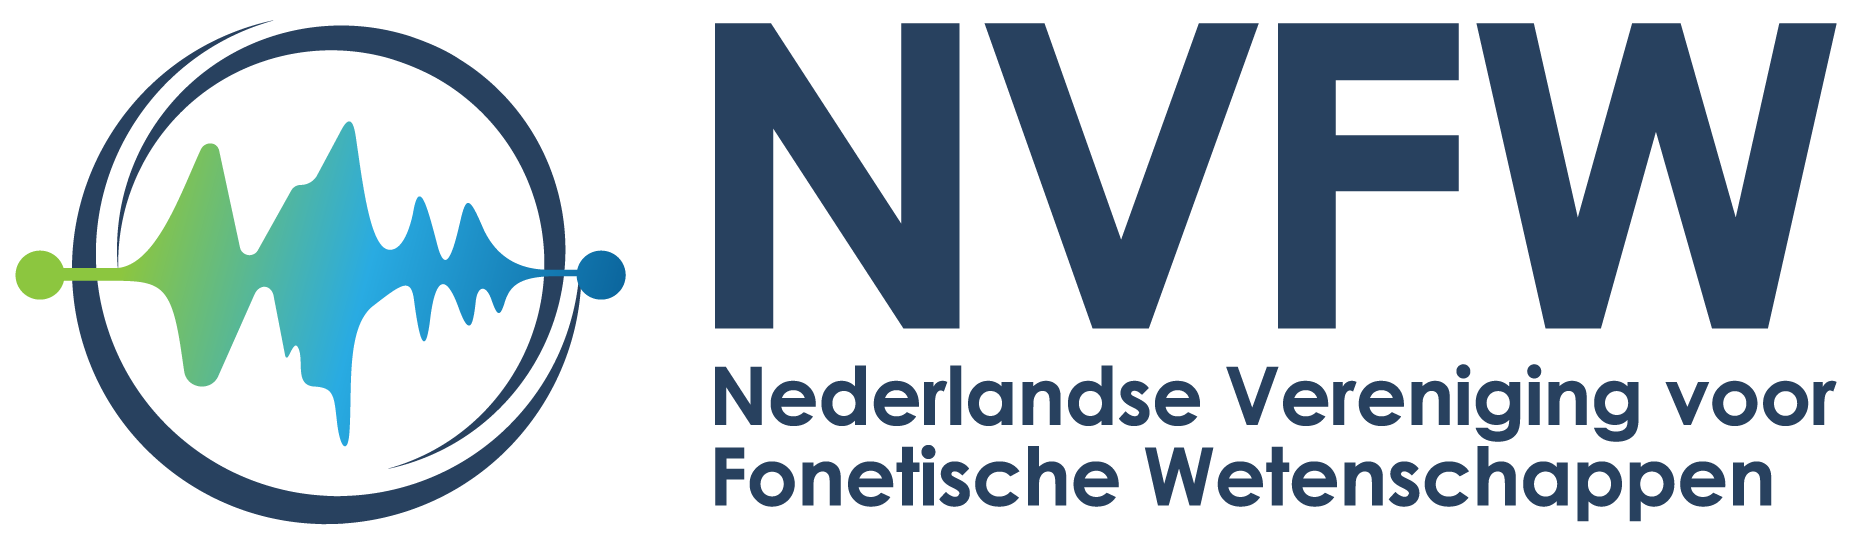 Logo of the Nederlandse Vereniging voor Fonetische Wetenschappen (NVFW)